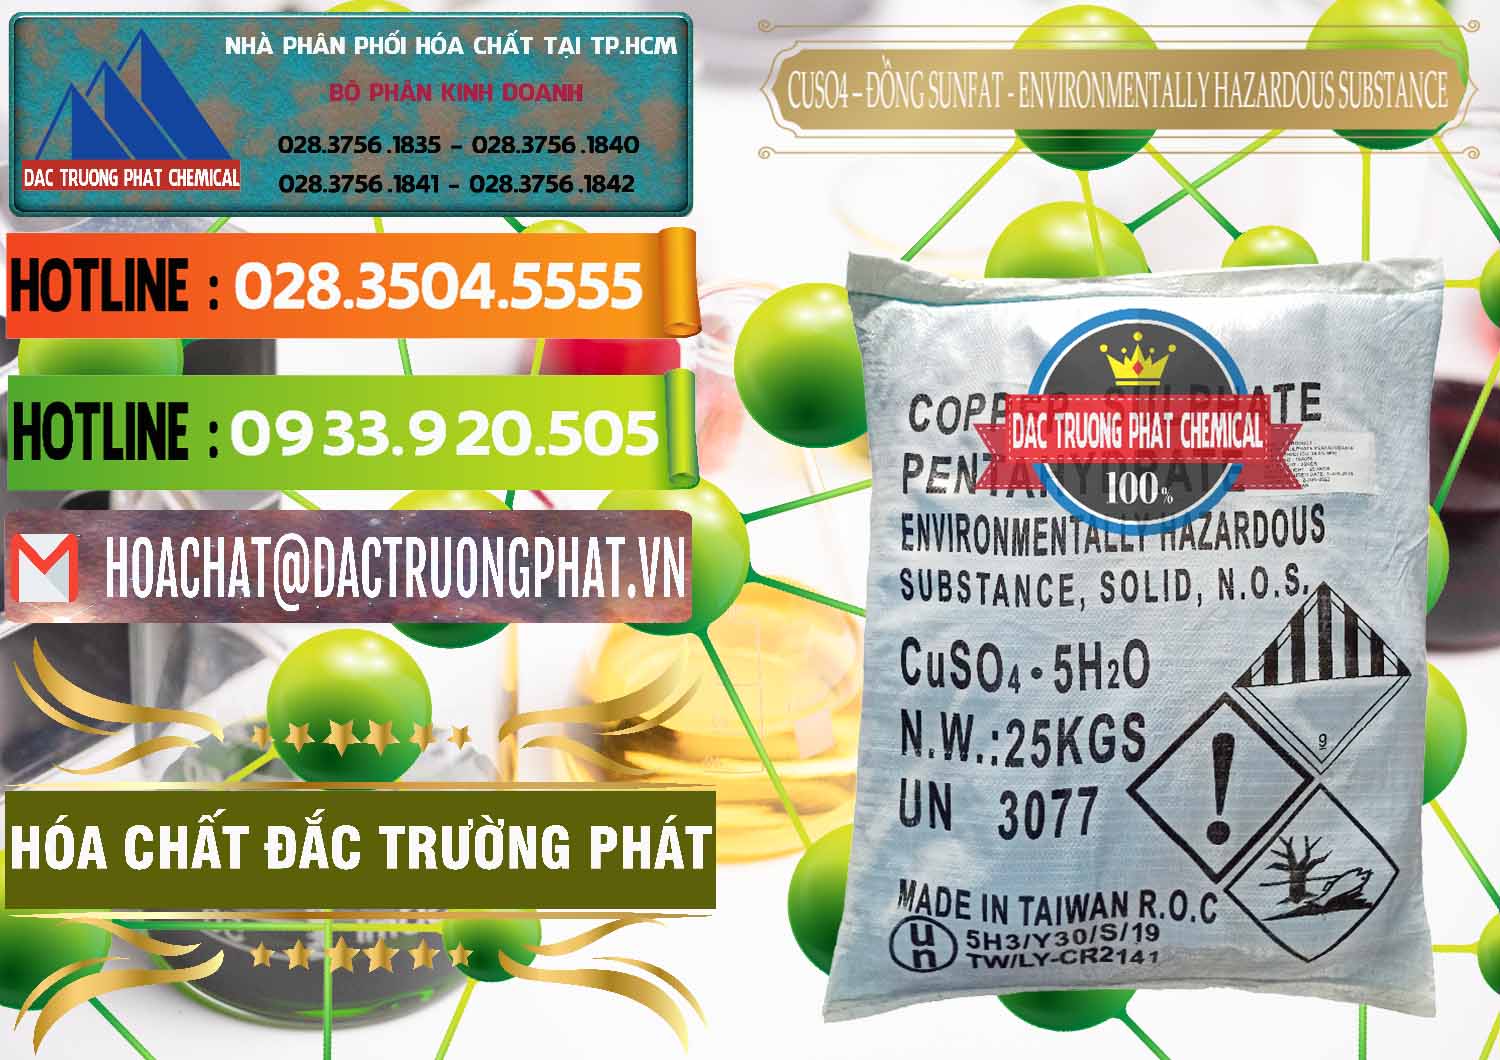 Bán & cung cấp CuSO4 – Đồng Sunfat Đài Loan Taiwan - 0059 - Công ty cung cấp và bán hóa chất tại TP.HCM - cungcaphoachat.com.vn